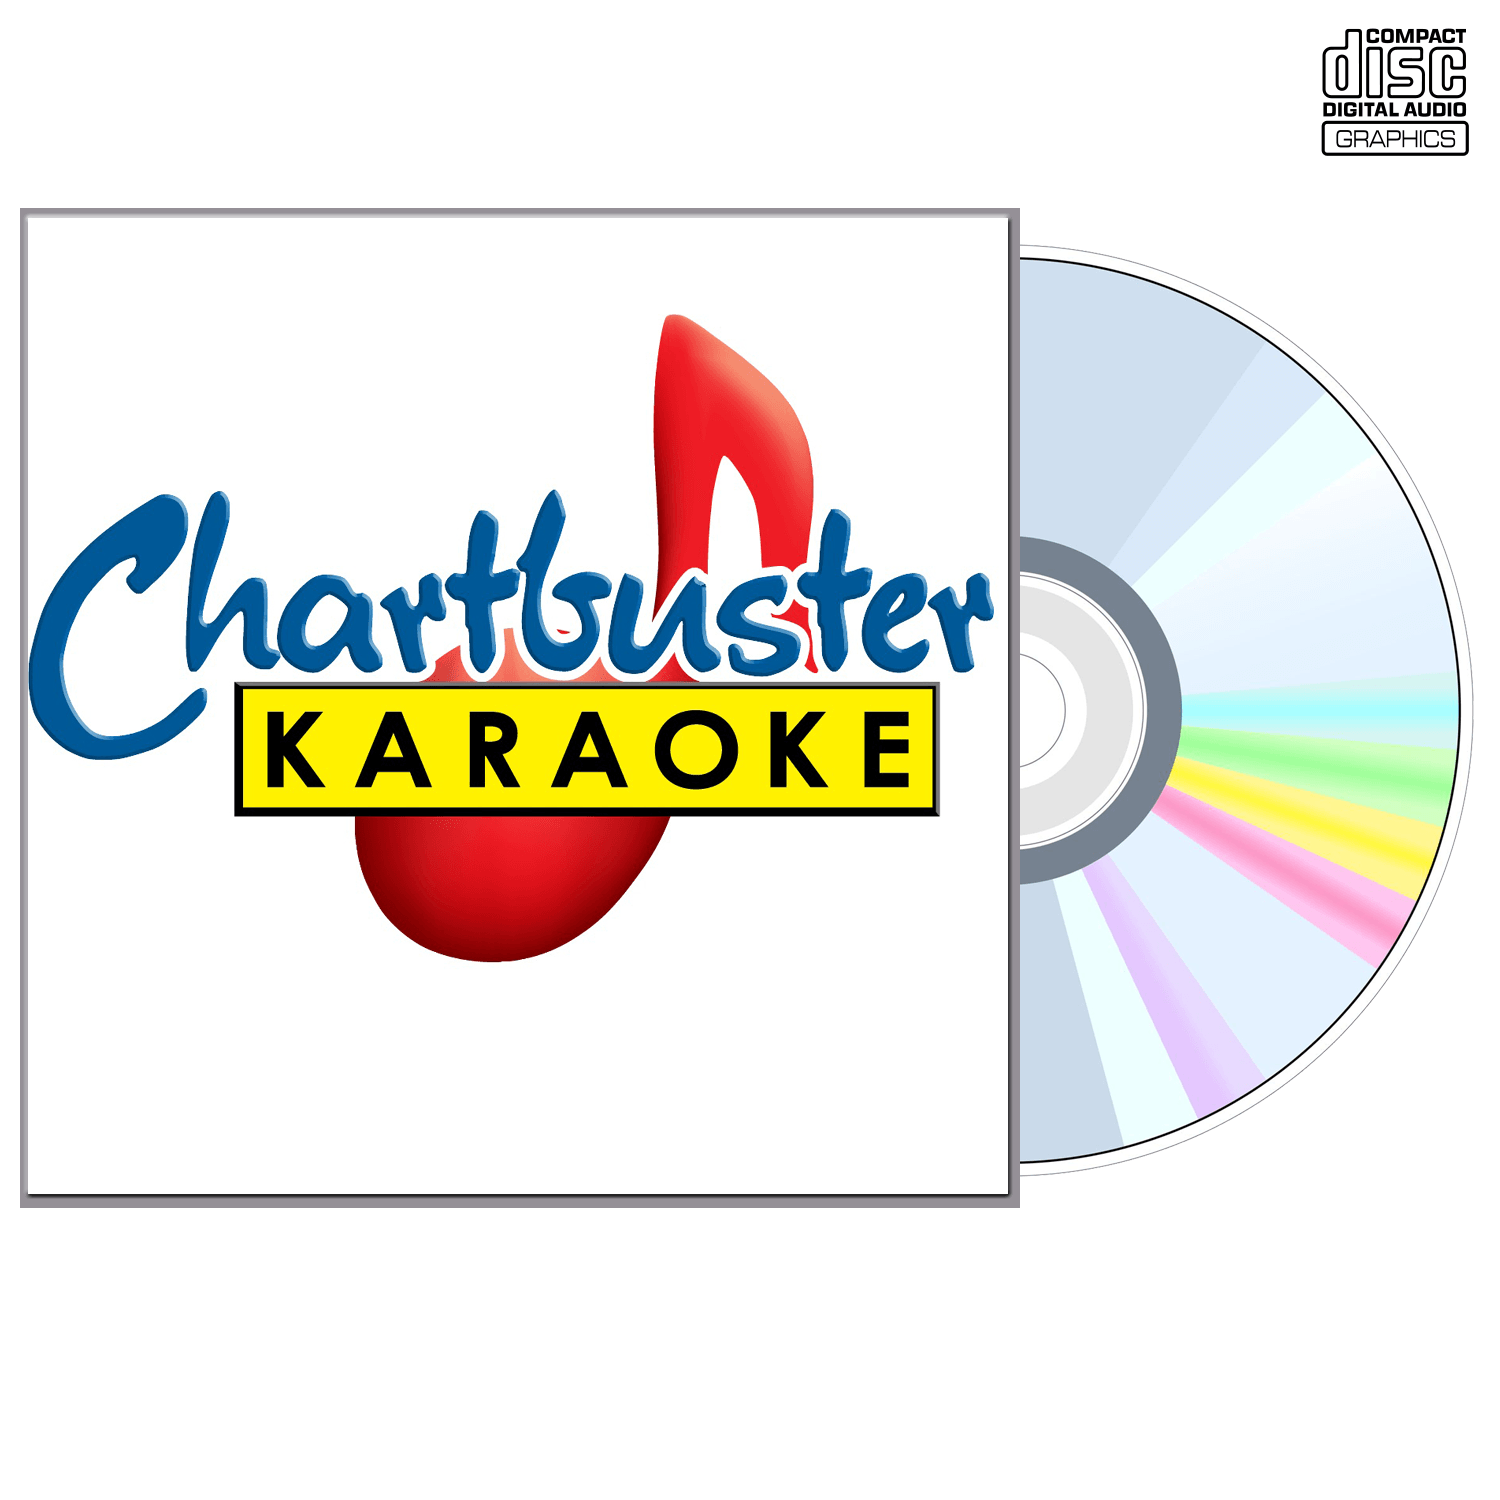 Joe Cocker - CD+G - Chartbuster Karaoke - Karaoke Home Entertainment